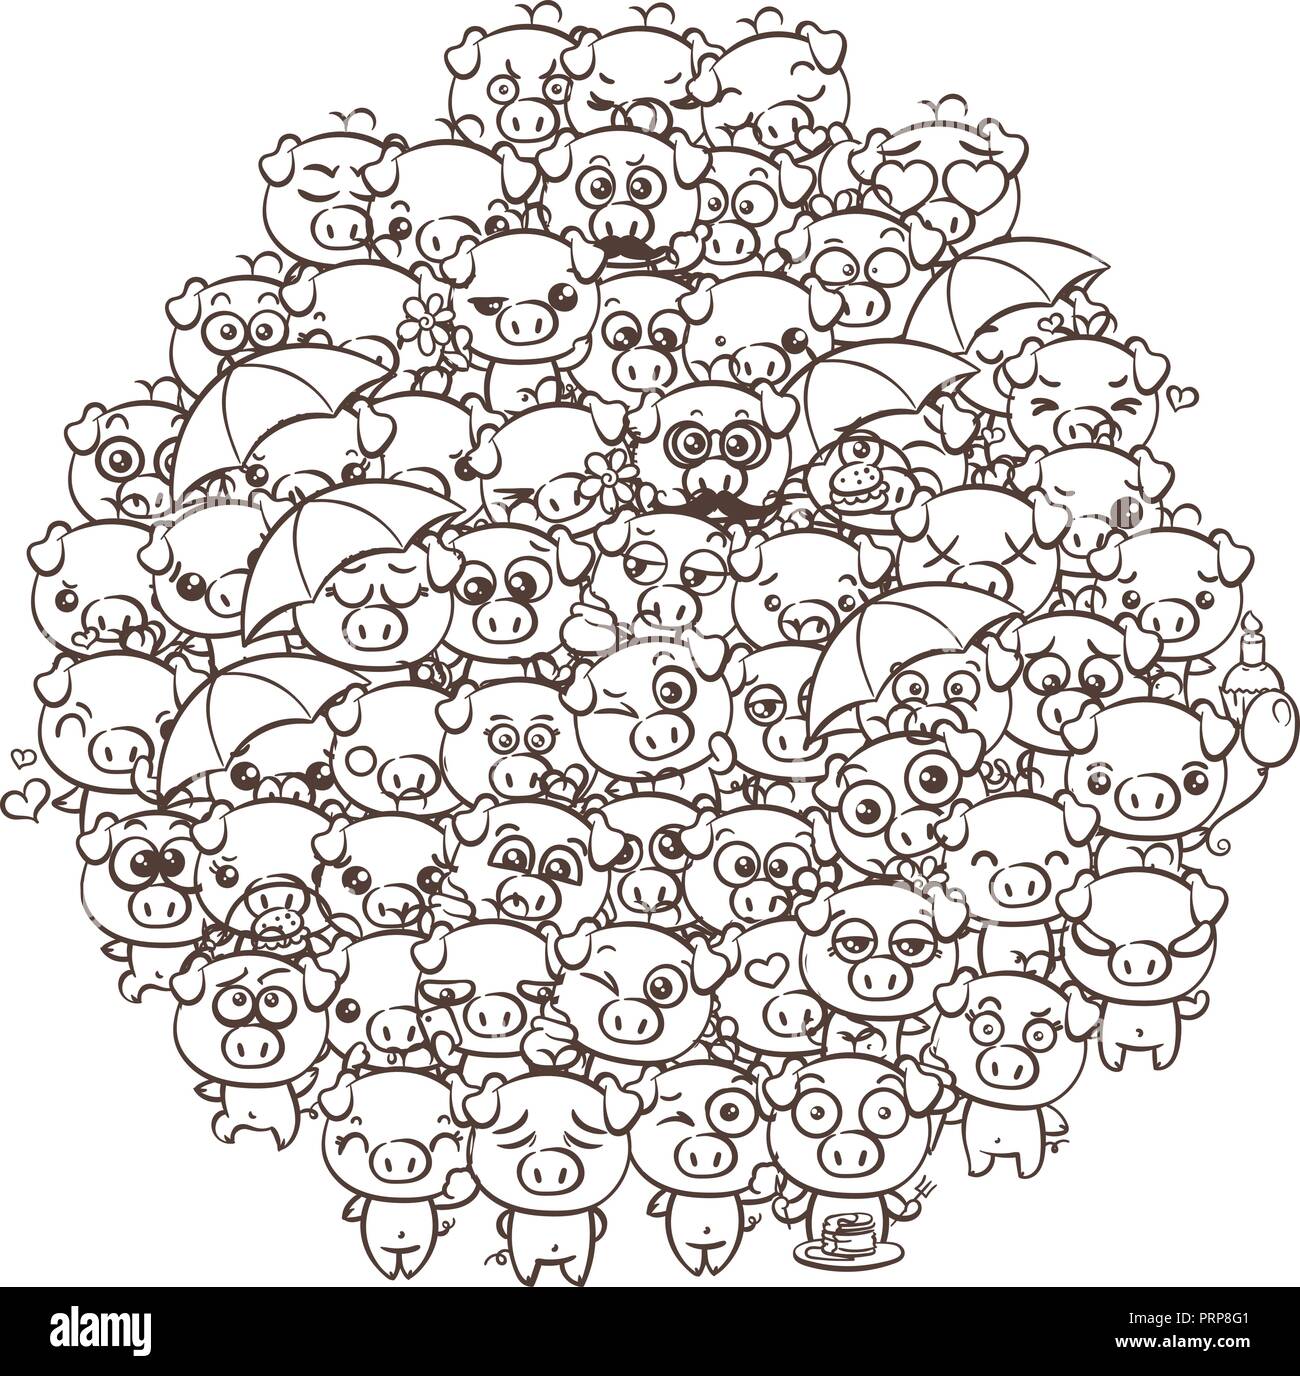 Arrière-plan avec mignon bébé les porcelets. Image kawaii cartoon pastel de  porcs. Dessiner à main levée par vecteur doodle comic art emoji  Illustration pour des pages à colorier un Image Vectorielle Stock -